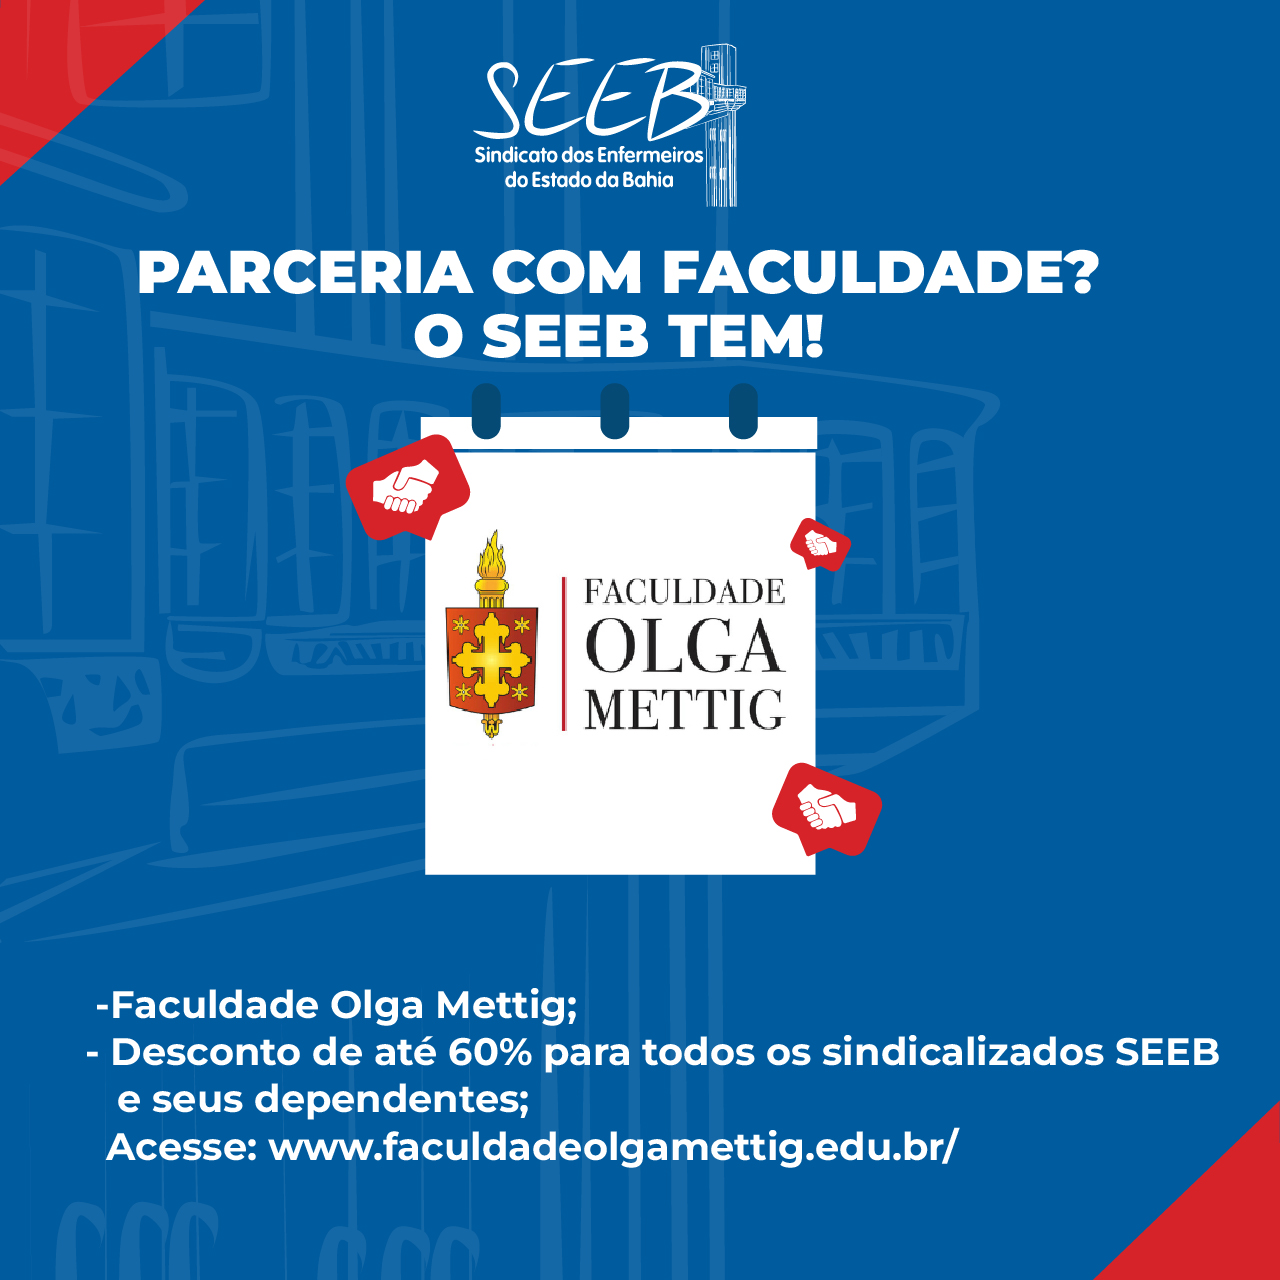 PARCERIA SEEB + Faculdade Olga Meeting